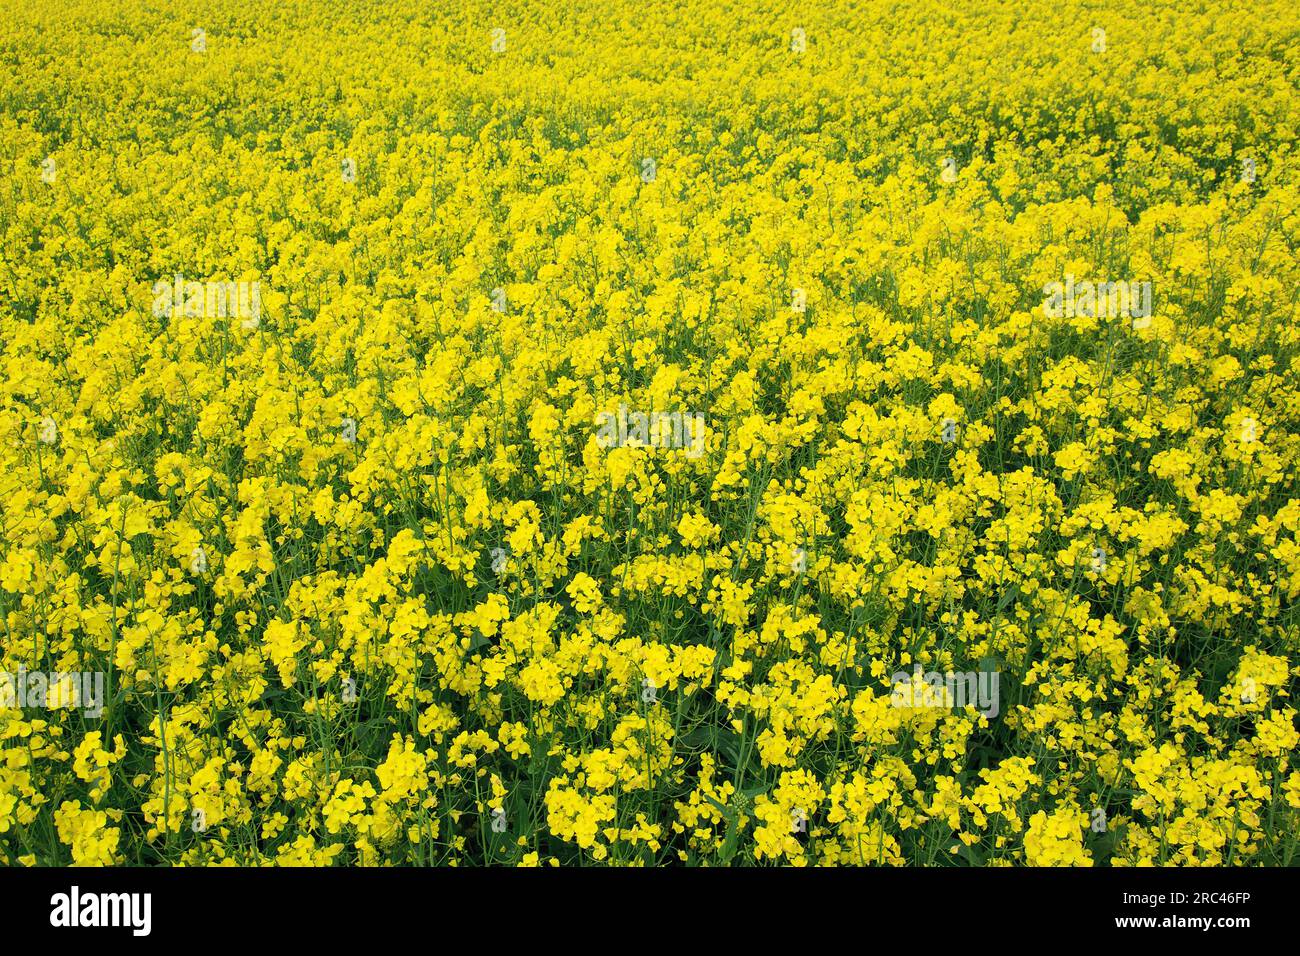 L'Angleterre, West Sussex, Arundel, champ de couleur jaune vif le viol, Brassica napus. Banque D'Images